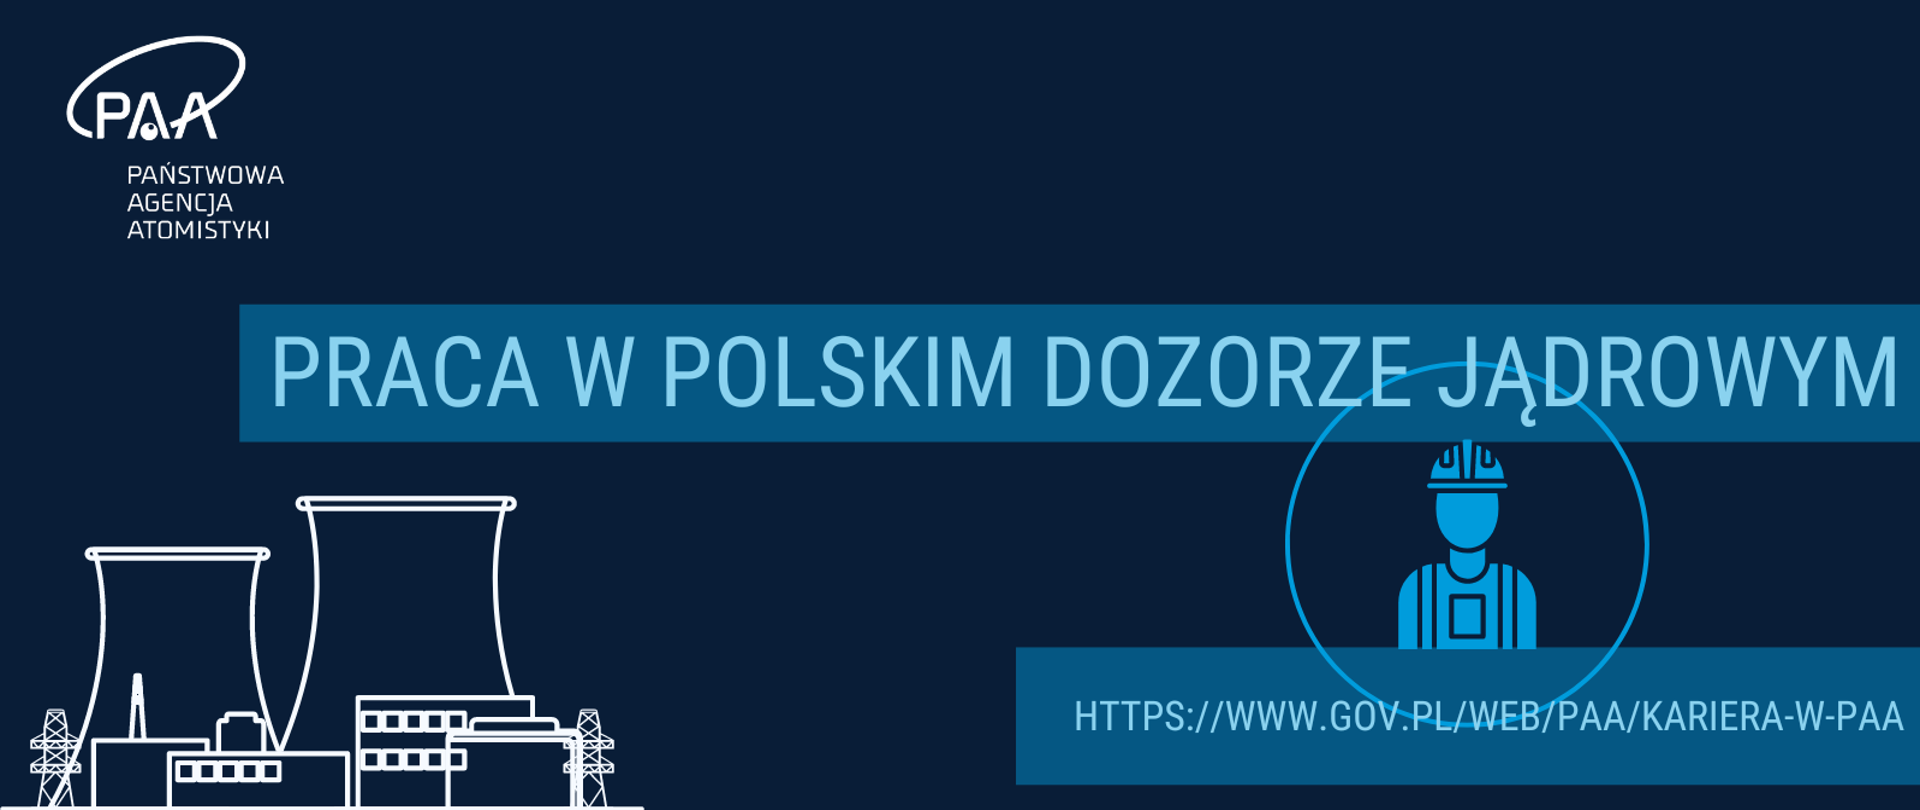 Grafika - na granatowym tle biała elektrownia jądrowa i logo PAA. Obok napis: "Praca w polskim dozorze jądrowym", ikona inspektora i adres strony: www.gov.pl/web/PAA/kariera-w-PAA